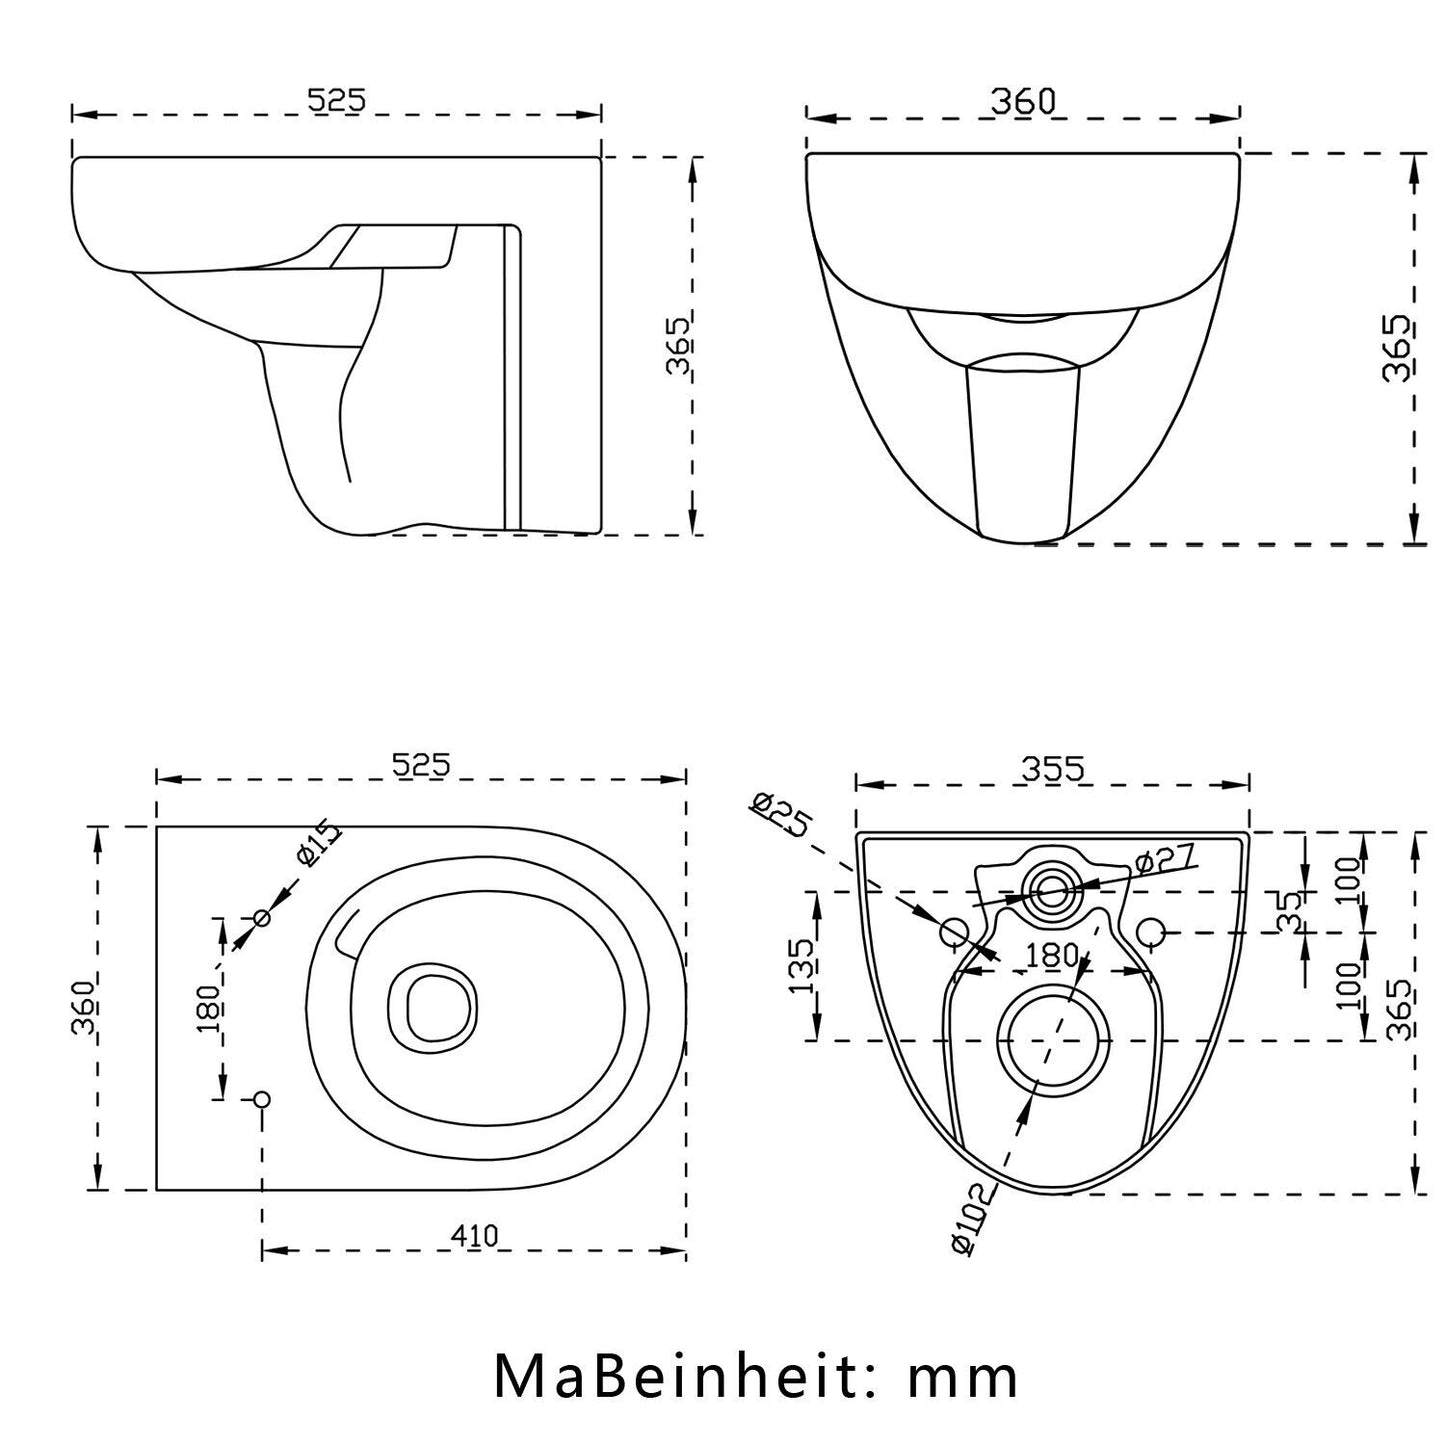 Badezimmer Spülrandlos Design Soft-Close Sitz WeiB Hänge WC Toilette